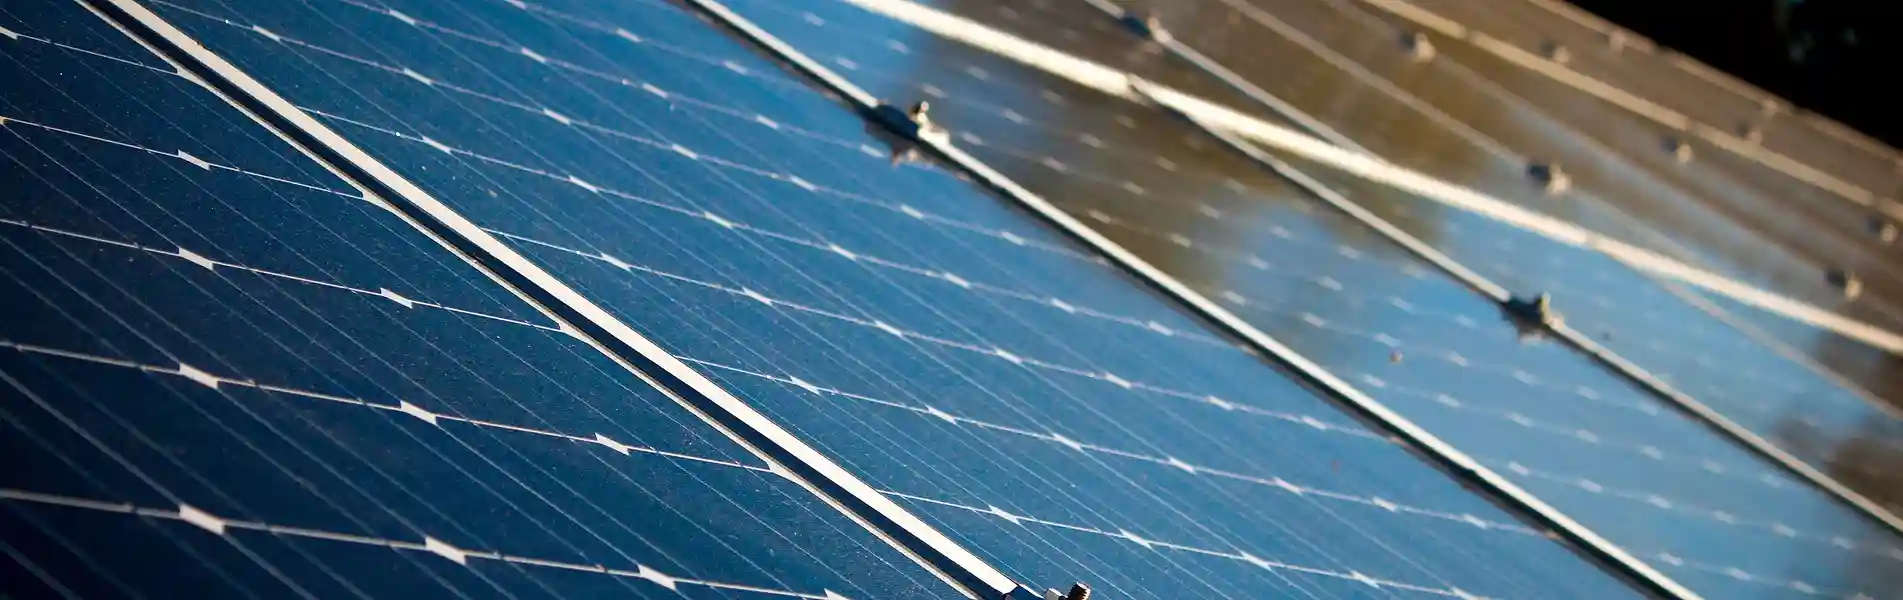 EMPIECE A AHORAR CON ENERGIA SOLAR Voltios.mx mejor precio en paneles solares